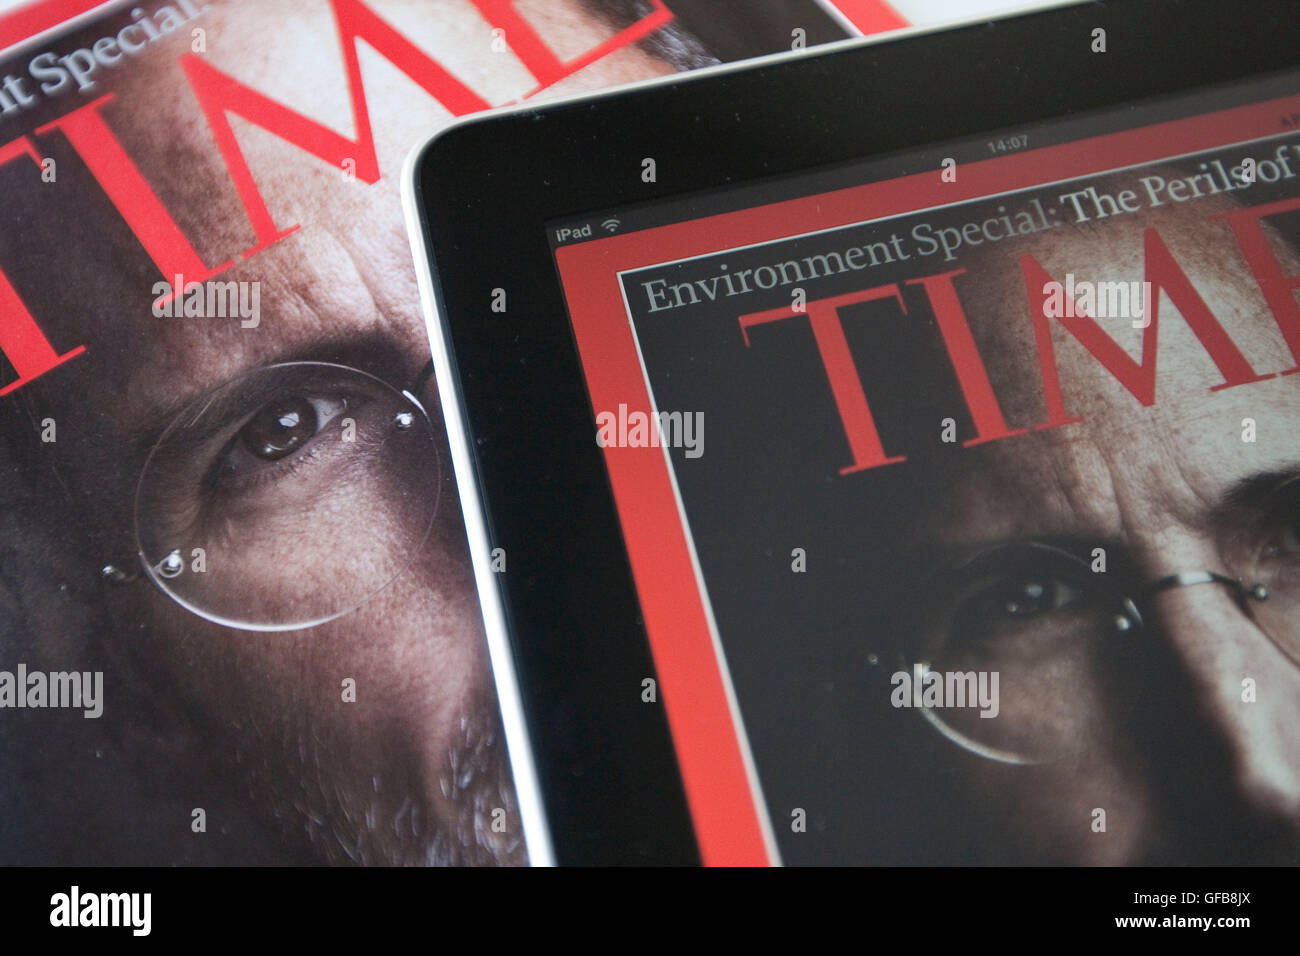 Apple iPad affichant le Time Magazine application sur une version imprimée du magazine avec Steve Jobs sur la couverture, 2010. Banque D'Images